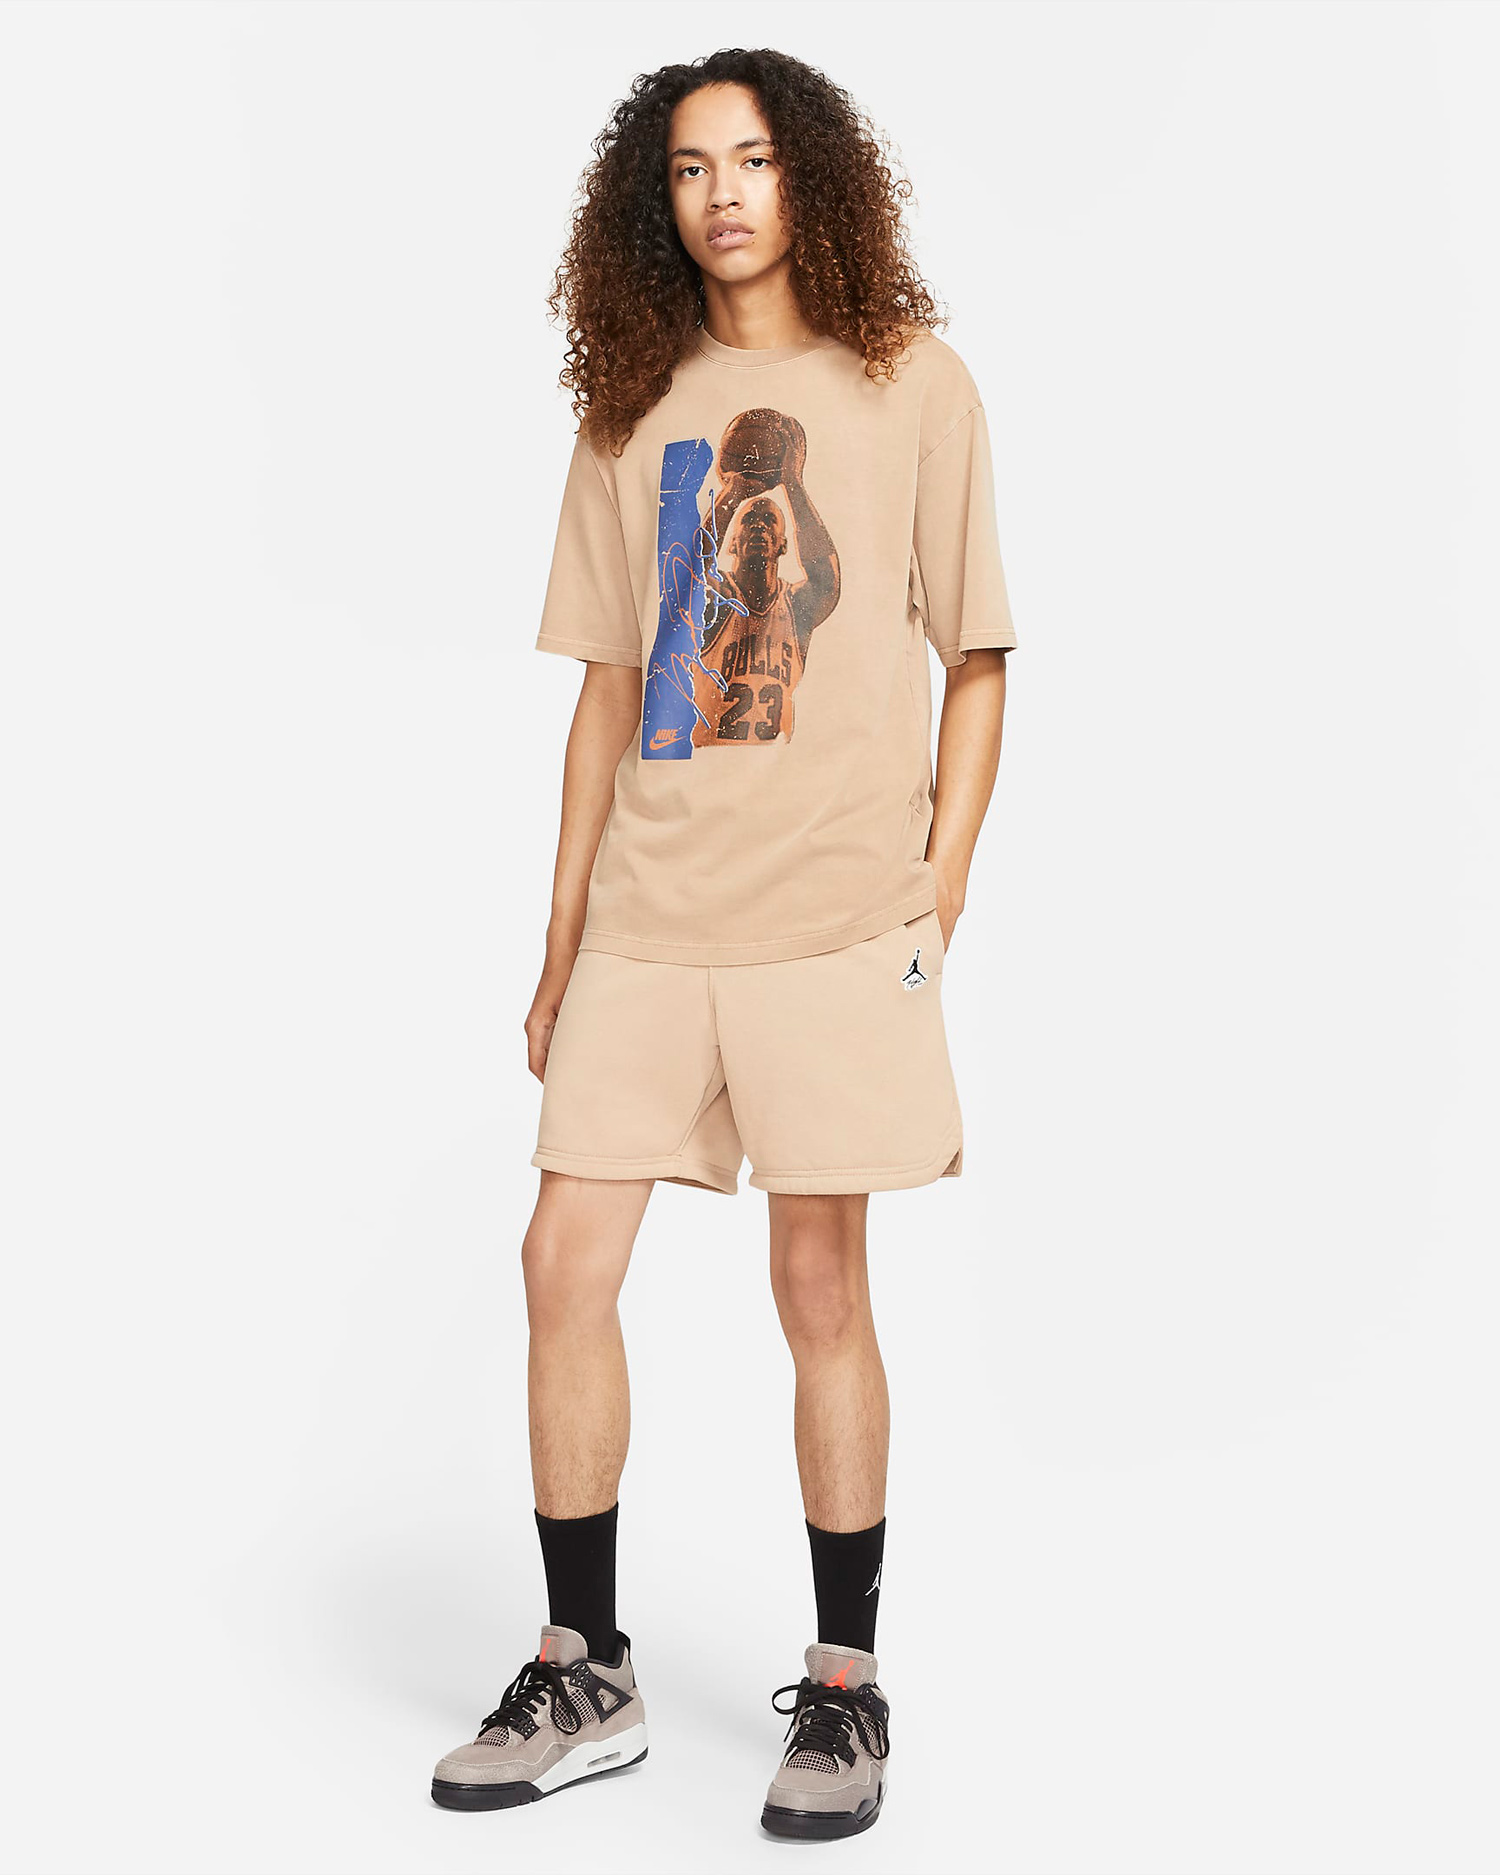 jordan-hemp-shirt-shorts-outfit